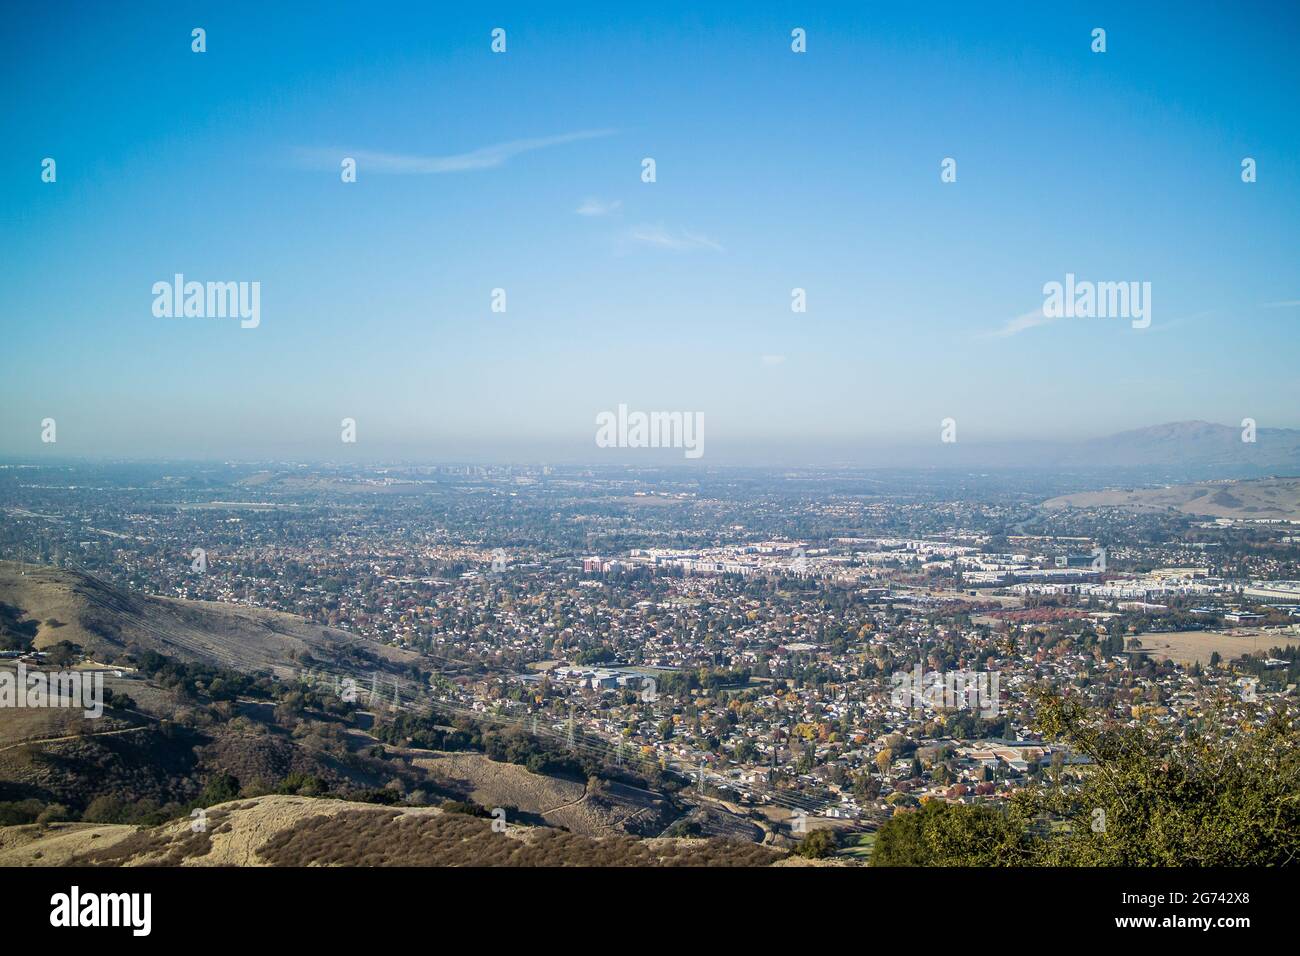 Vista de Silicon Valley desde Coyote Peak, en el Parque Santa Teresa, mirando hacia el norte sobre San José, Santa Clara y Sunnyvale hasta la Bahía de San Francisco. Foto de stock